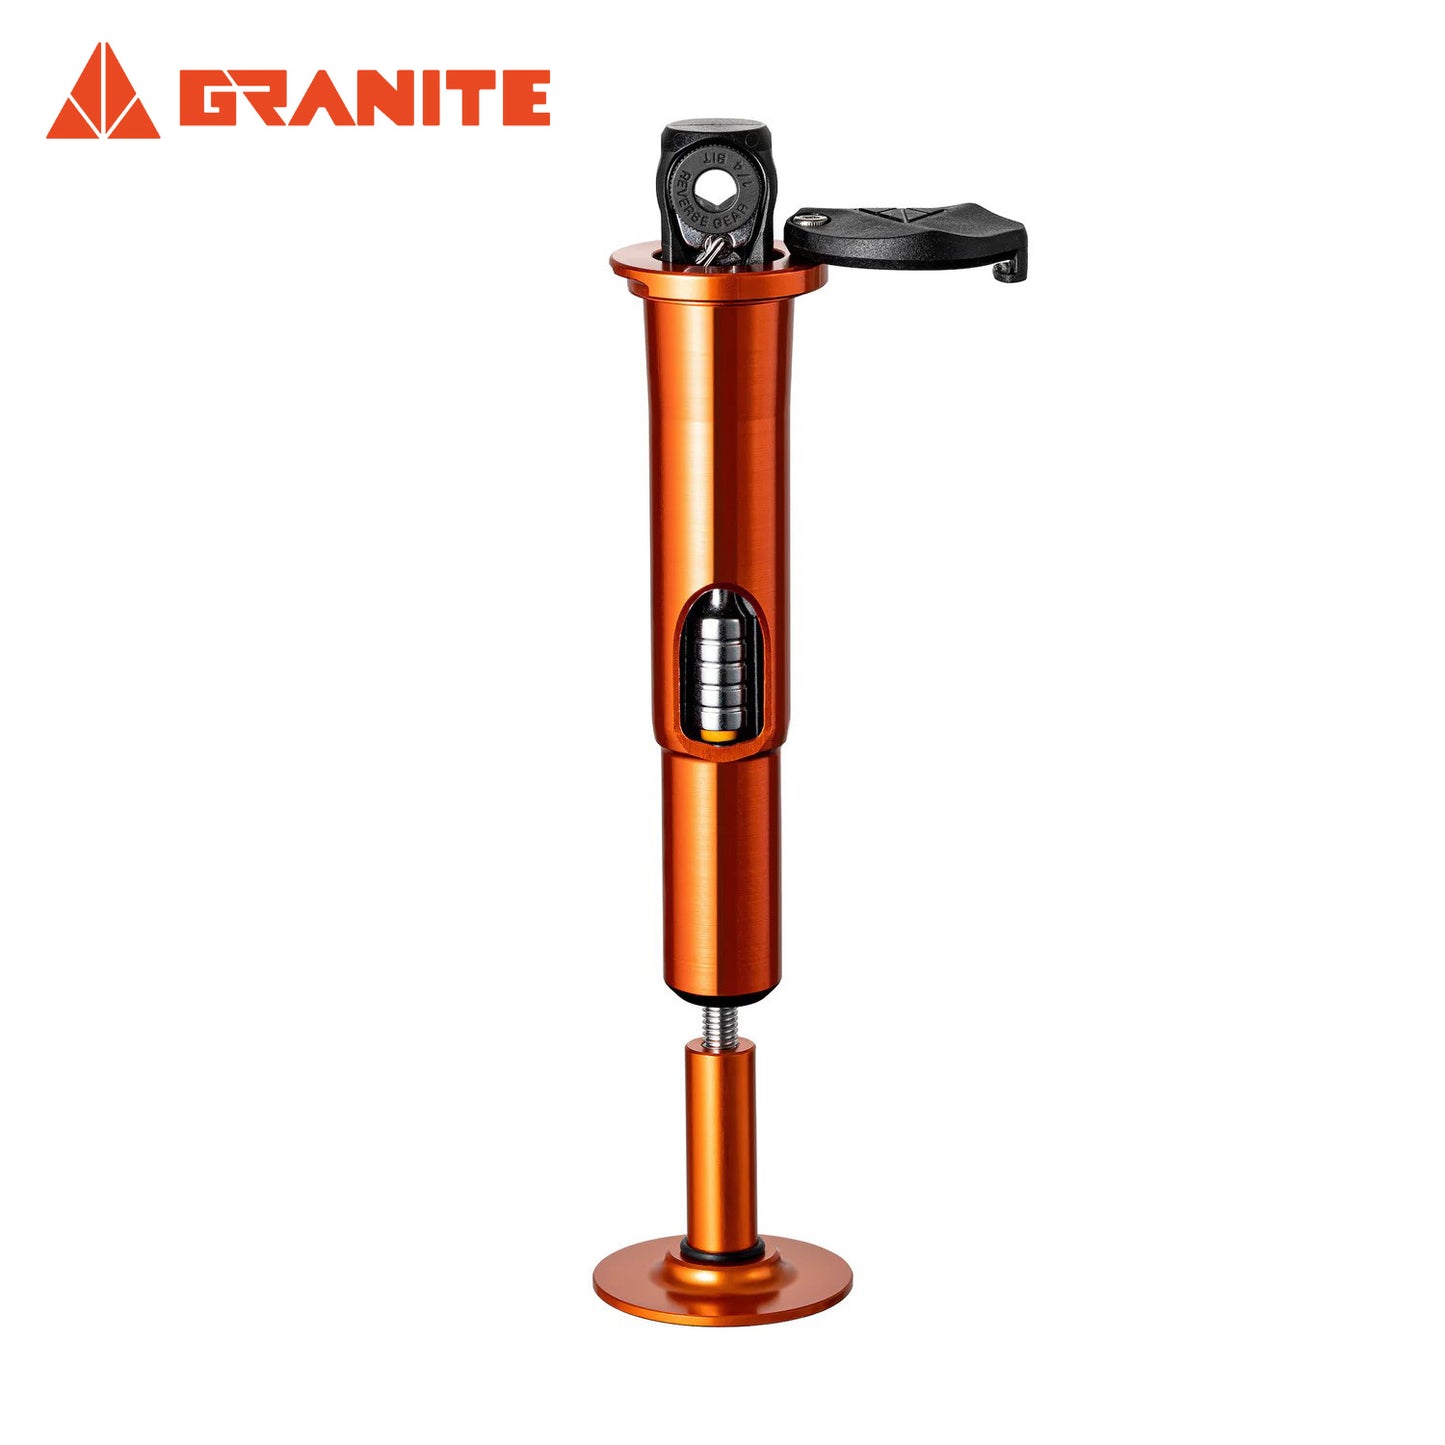 Granite Stash RT Ratchet Tool Kit w/ 9 Bits & Steerer Tube Housing - Orange